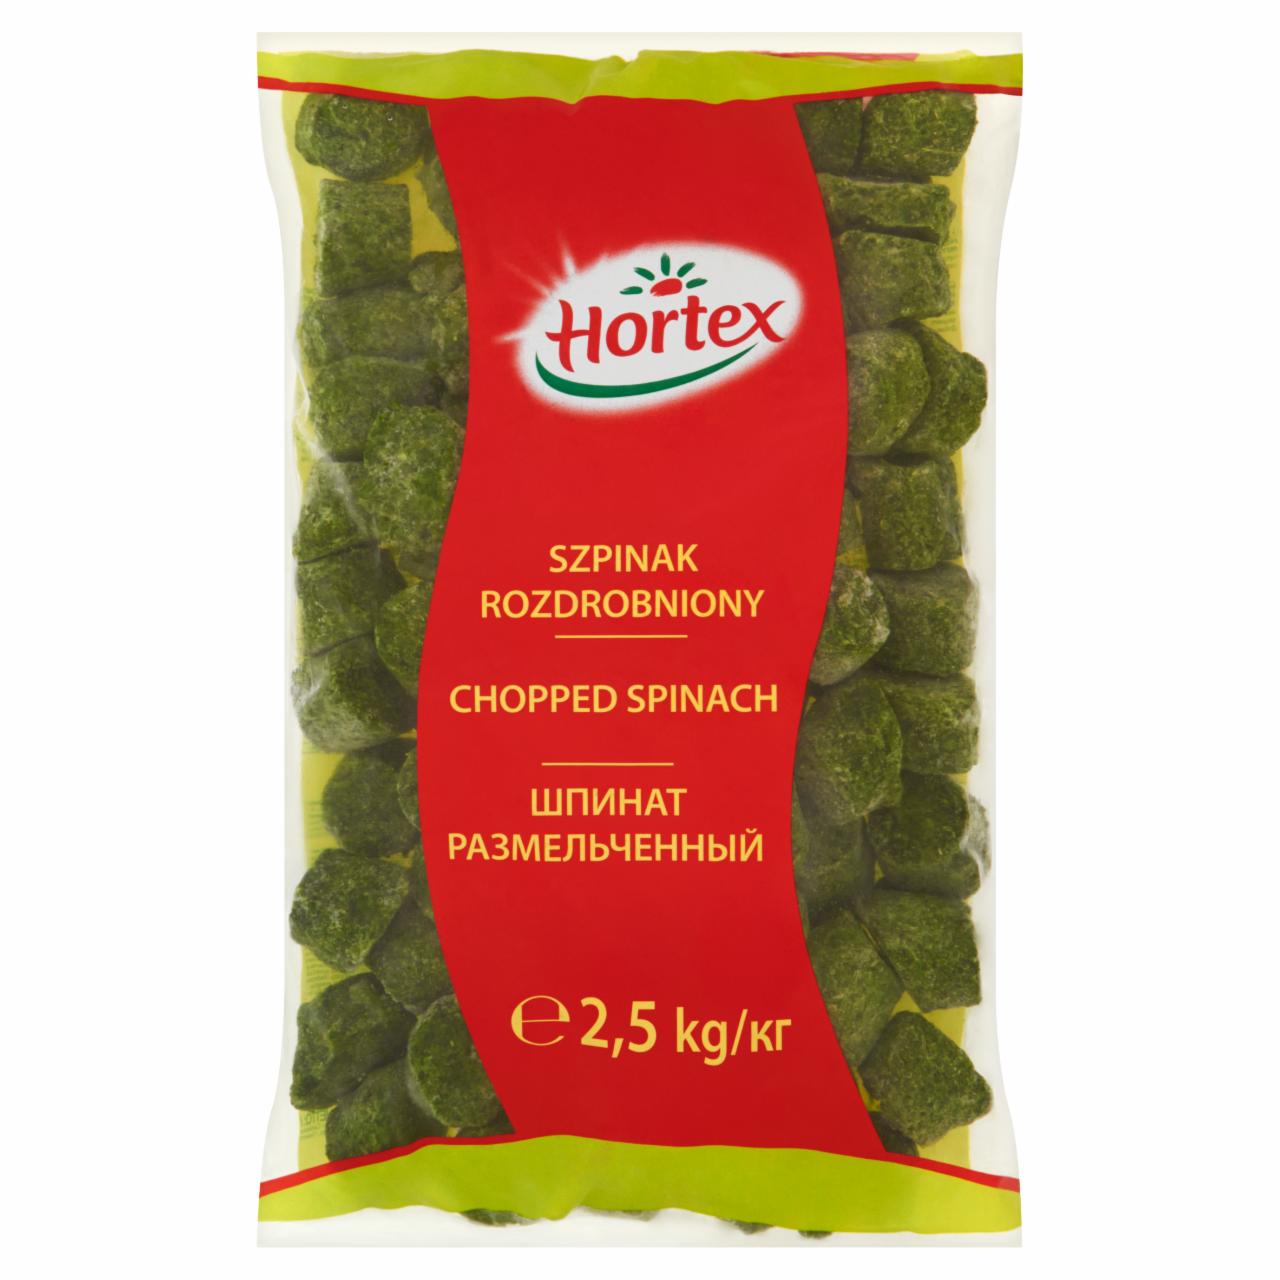 Zdjęcia - Hortex Szpinak rozdrobniony 2,5 kg